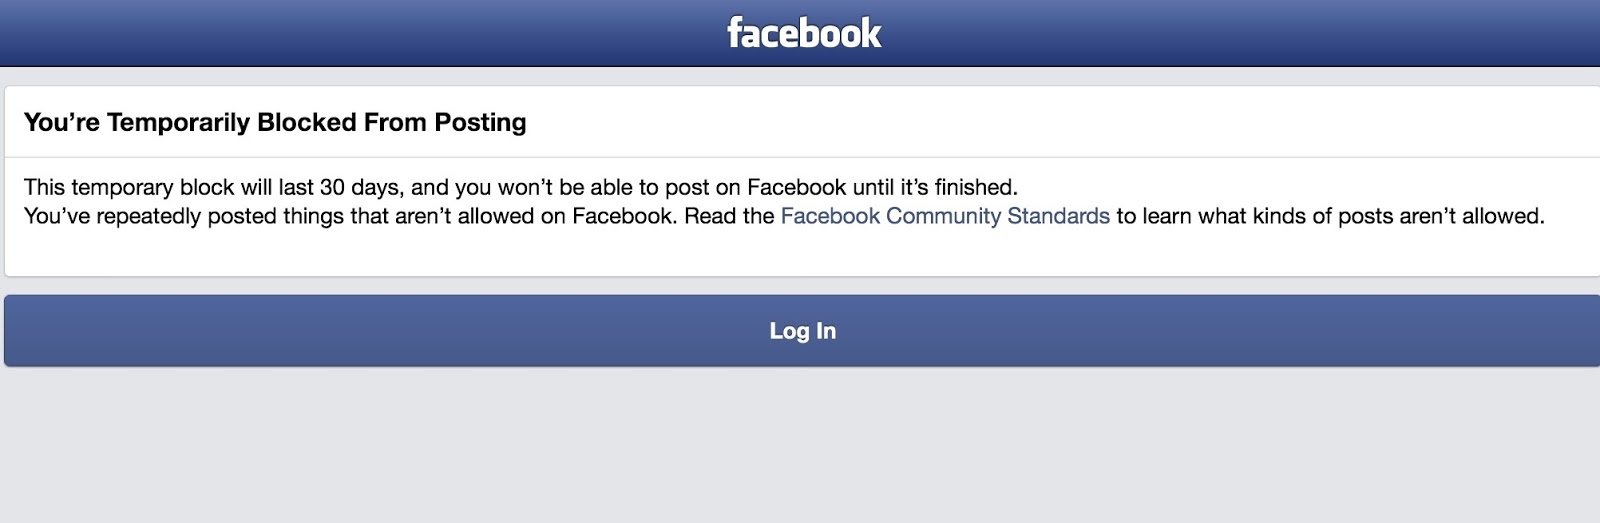 Contacter facebook, compte facebook piraté, supprimer compte facebook, tine...